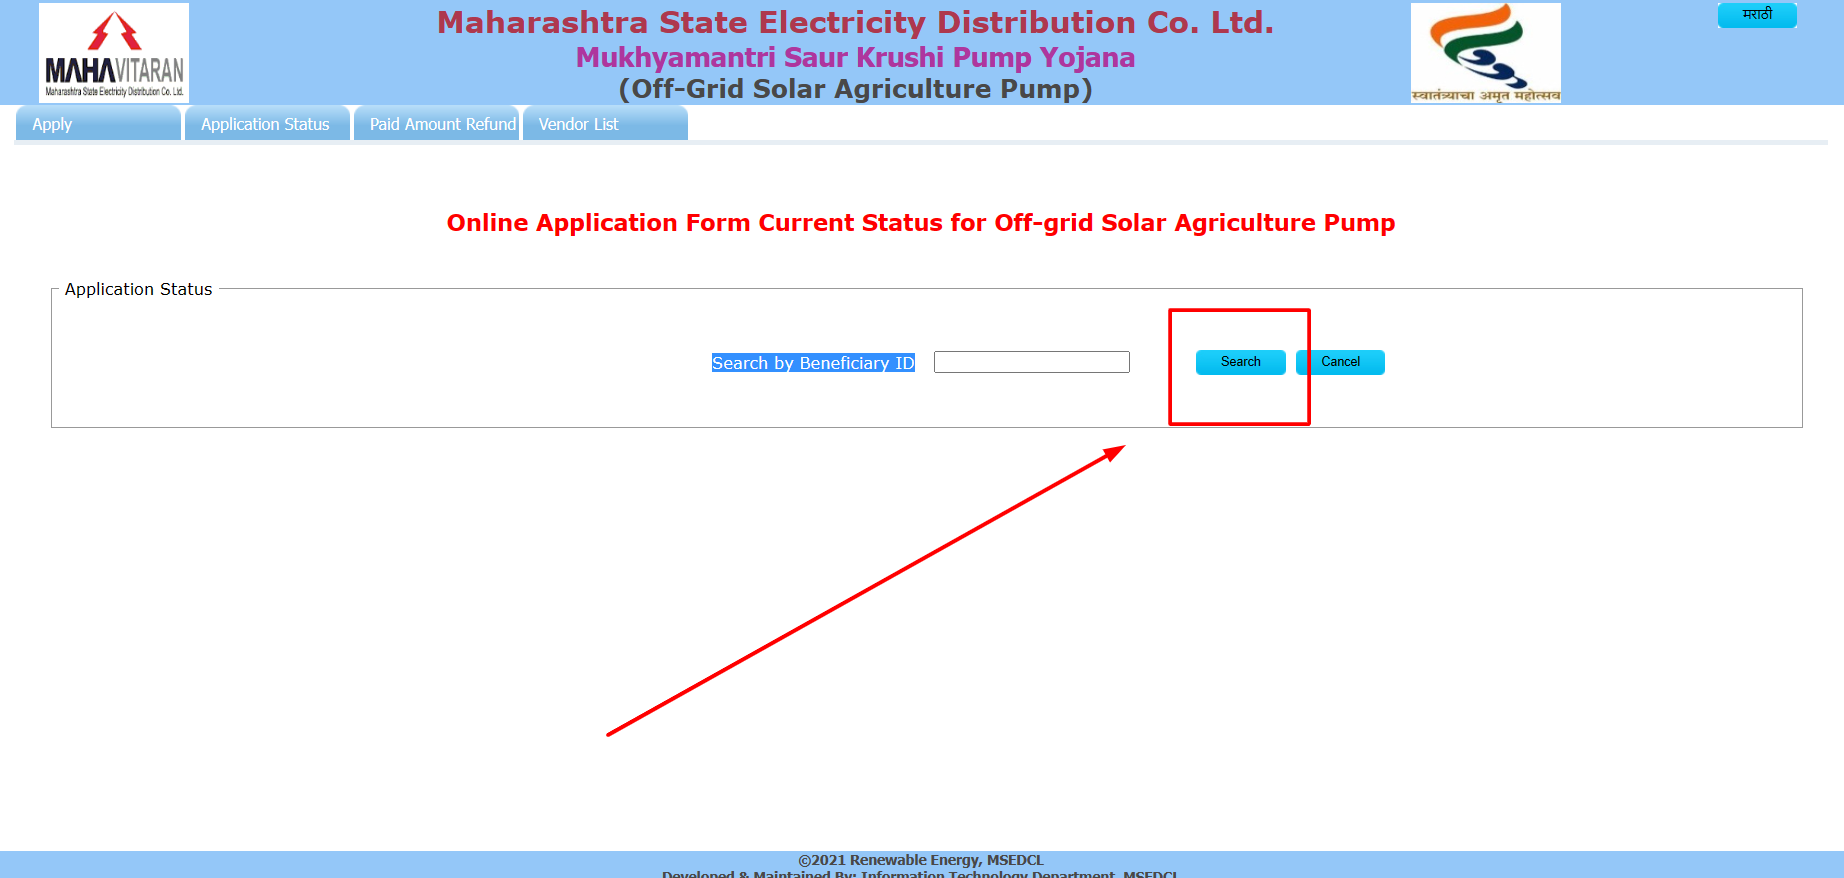 महाराष्ट्र मुख्यमंत्री सौर कृषी पंप योजना 2023: ऑनलाइन आवेदन, अर्ज स्थिती